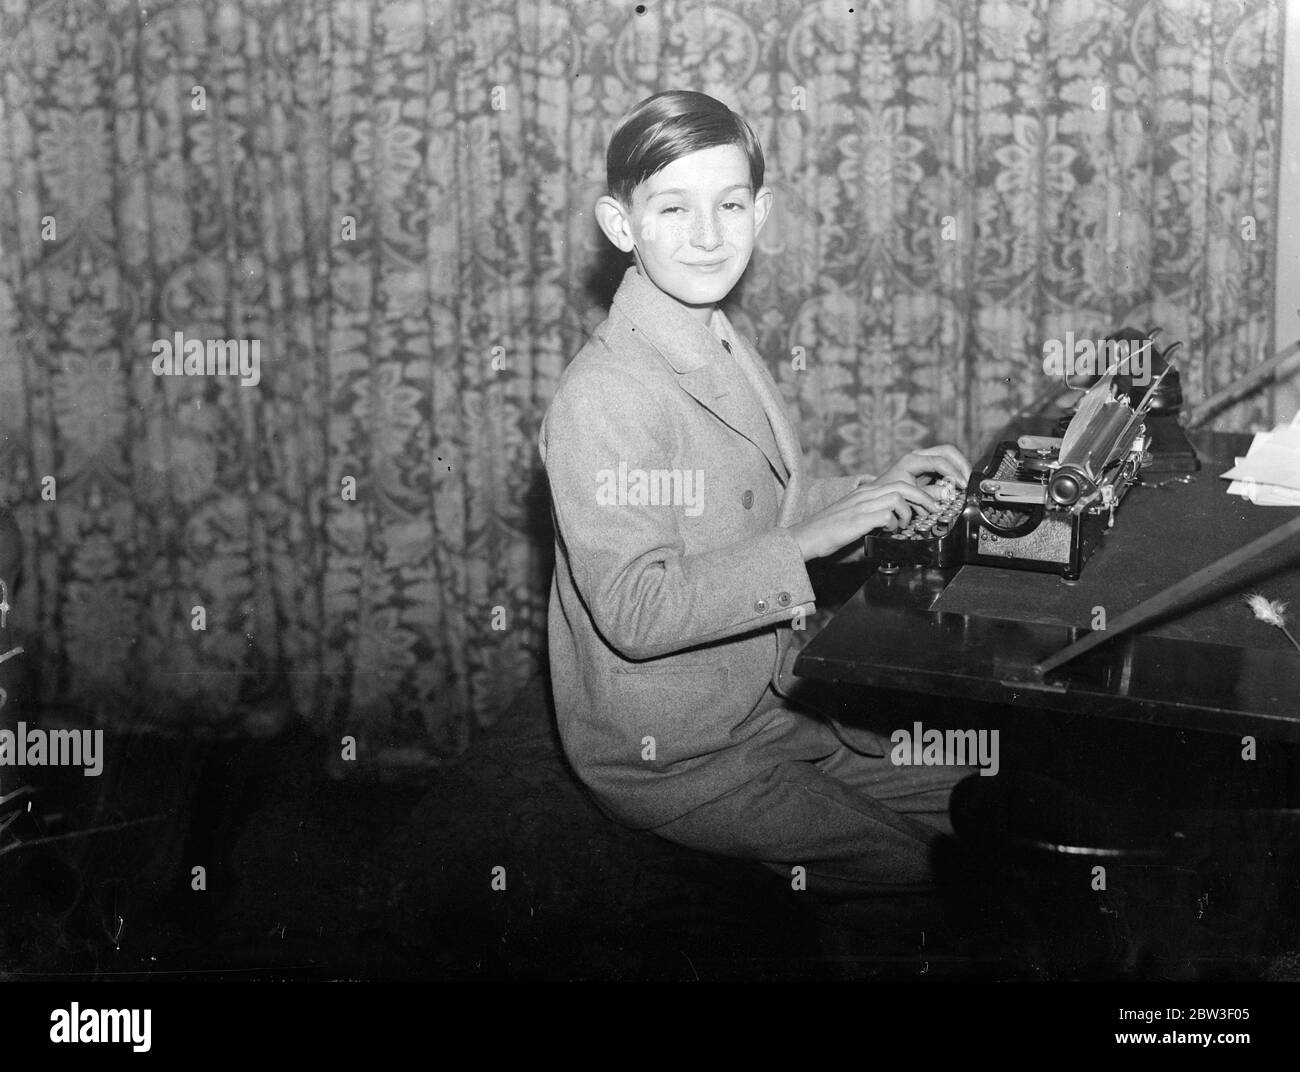 Schreiben seines dritten Buches im Alter von 11 Jahren. London Junge mit erstaunlichem Geschenk gekauft Schreibmaschine mit Lizenzgebühren . Robert Holland bei der Arbeit an seinem neuen Buch mit seiner Schreibmaschine. 21 Dezember 1935 Stockfoto